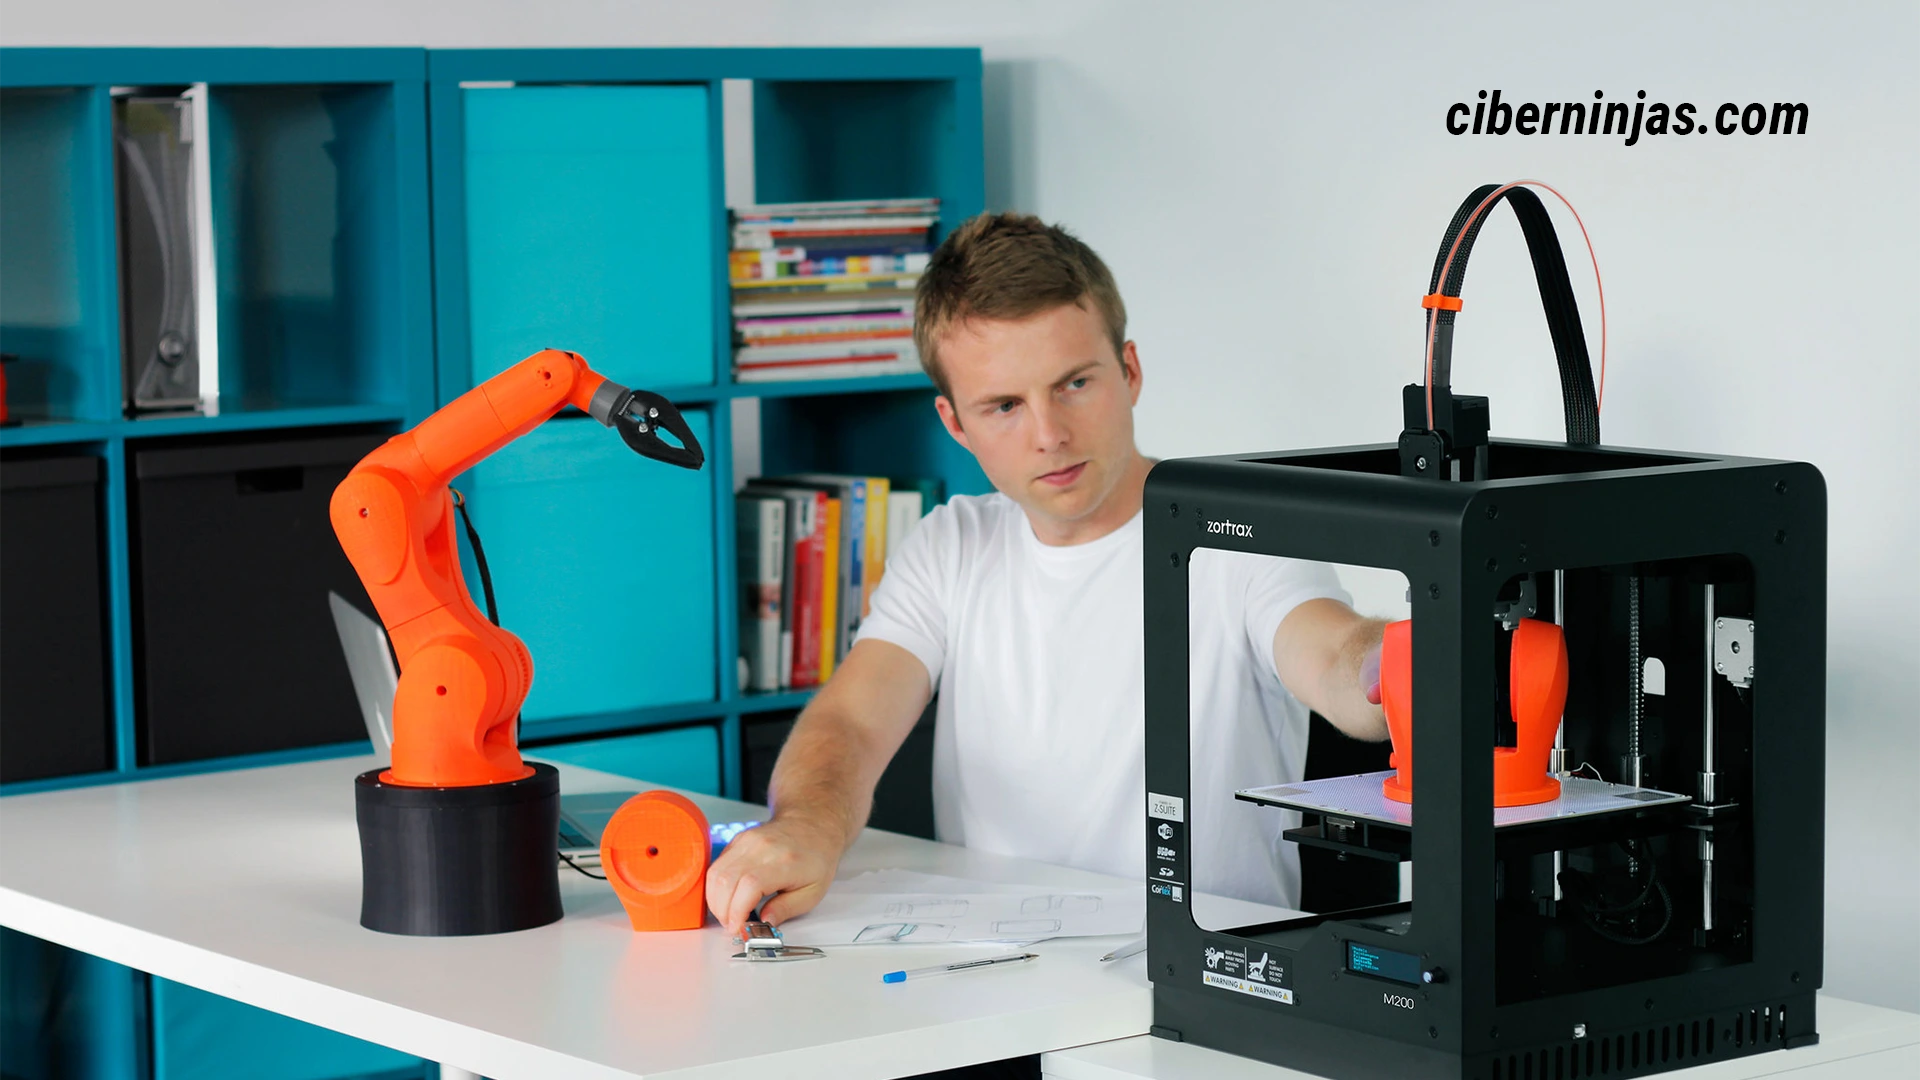 Impresoras 3D: Una breve introducción. "Zortrax M200 3D printer" by Creative Tools is licensed under CC BY 2.0